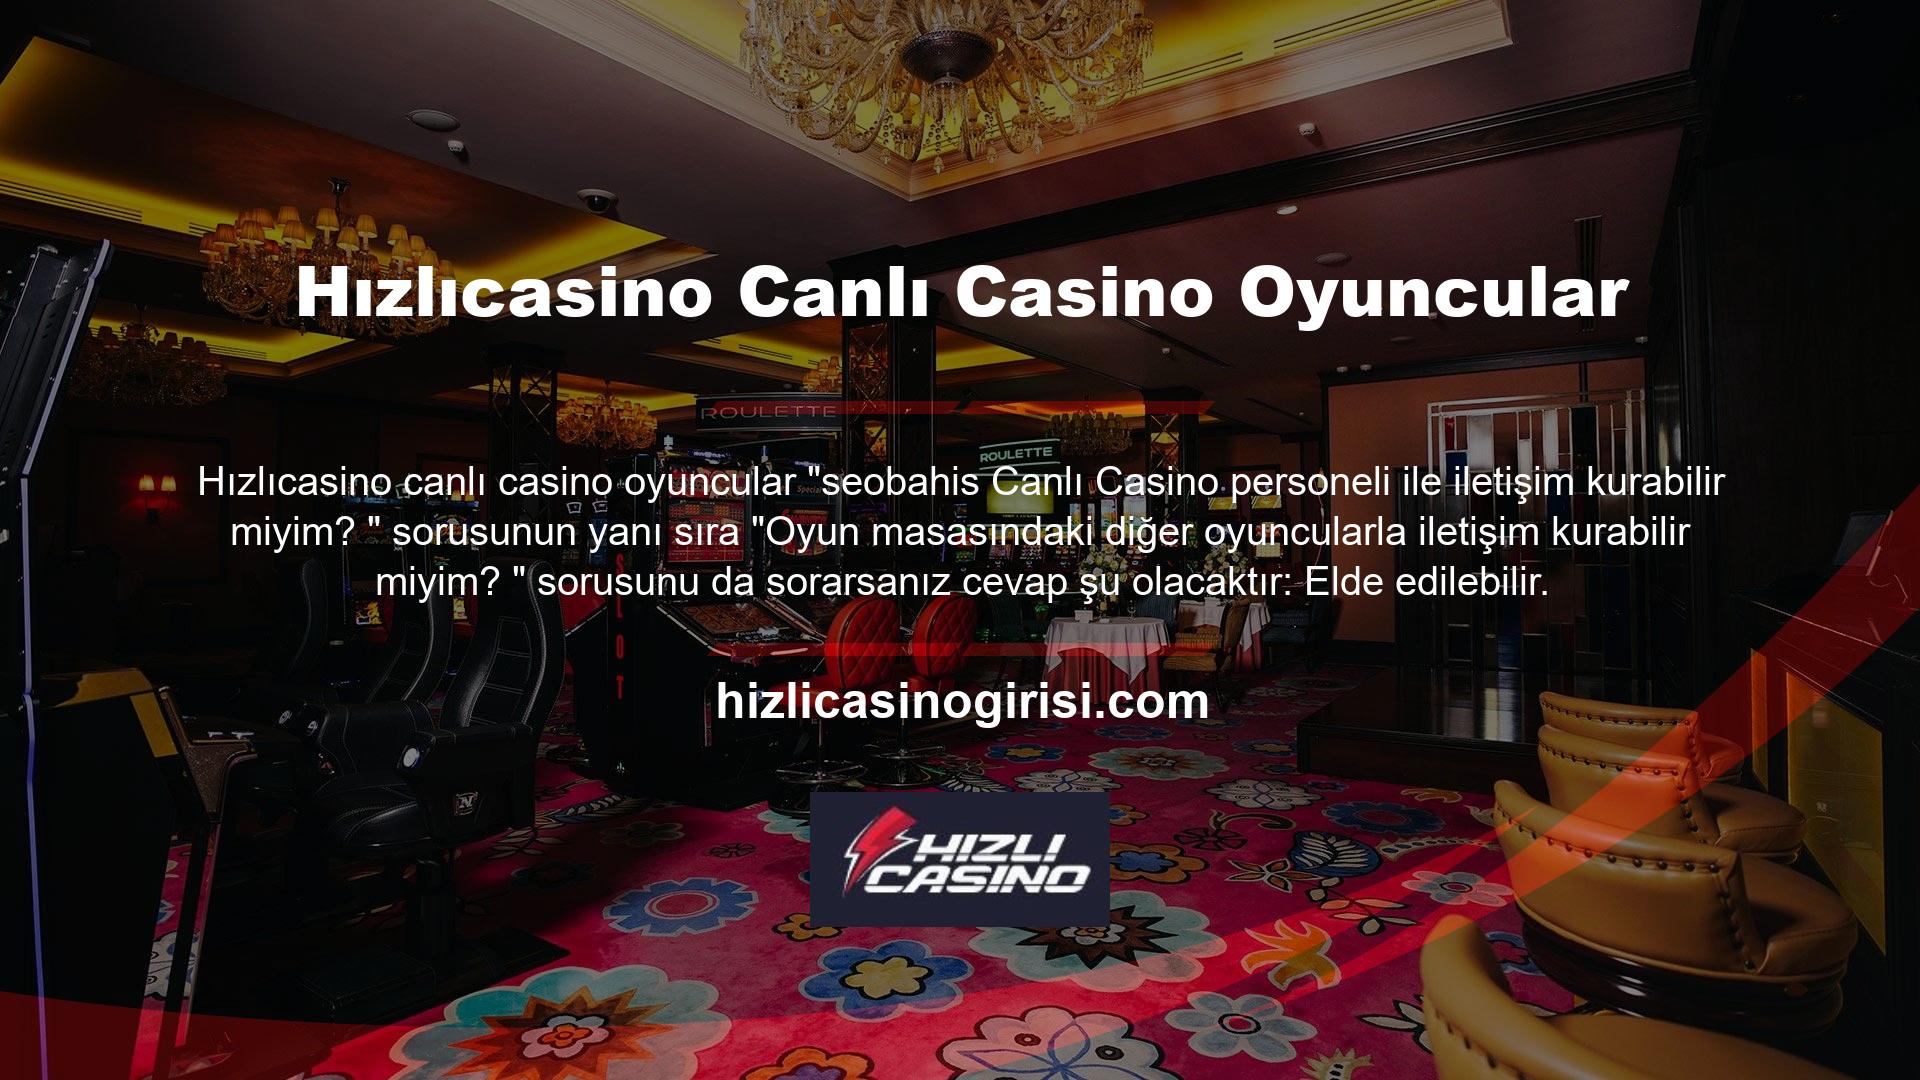 Elbette canlı casino oyun masaları sesli ve yazılı sohbet özelliklerini kullanıyor